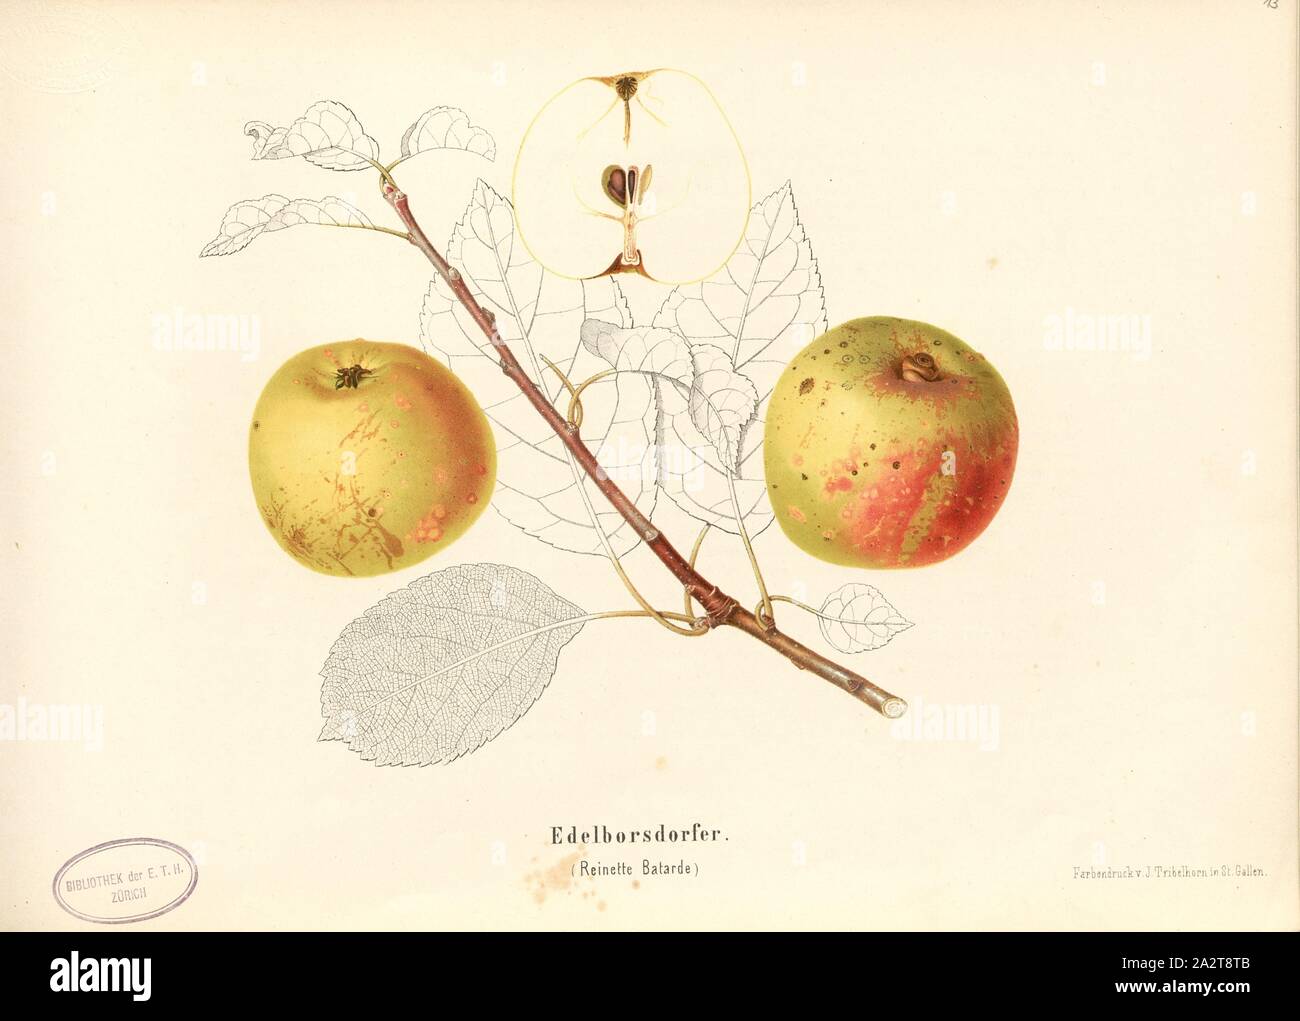 Edelborsdorfer, Swiss apple variety, Reinette Batarde, Signed: Color print by J. Tribelhorn, Fig. 12, Tribelhorn, J. (imp.), 1863, Schweizerisch. Landwirtschaftl. Verein (Hg.): Schweizerische Obstsorten. [S.l.]: Schweizerischer Landwirtschaftlicher Verein, [1863 Stock Photo